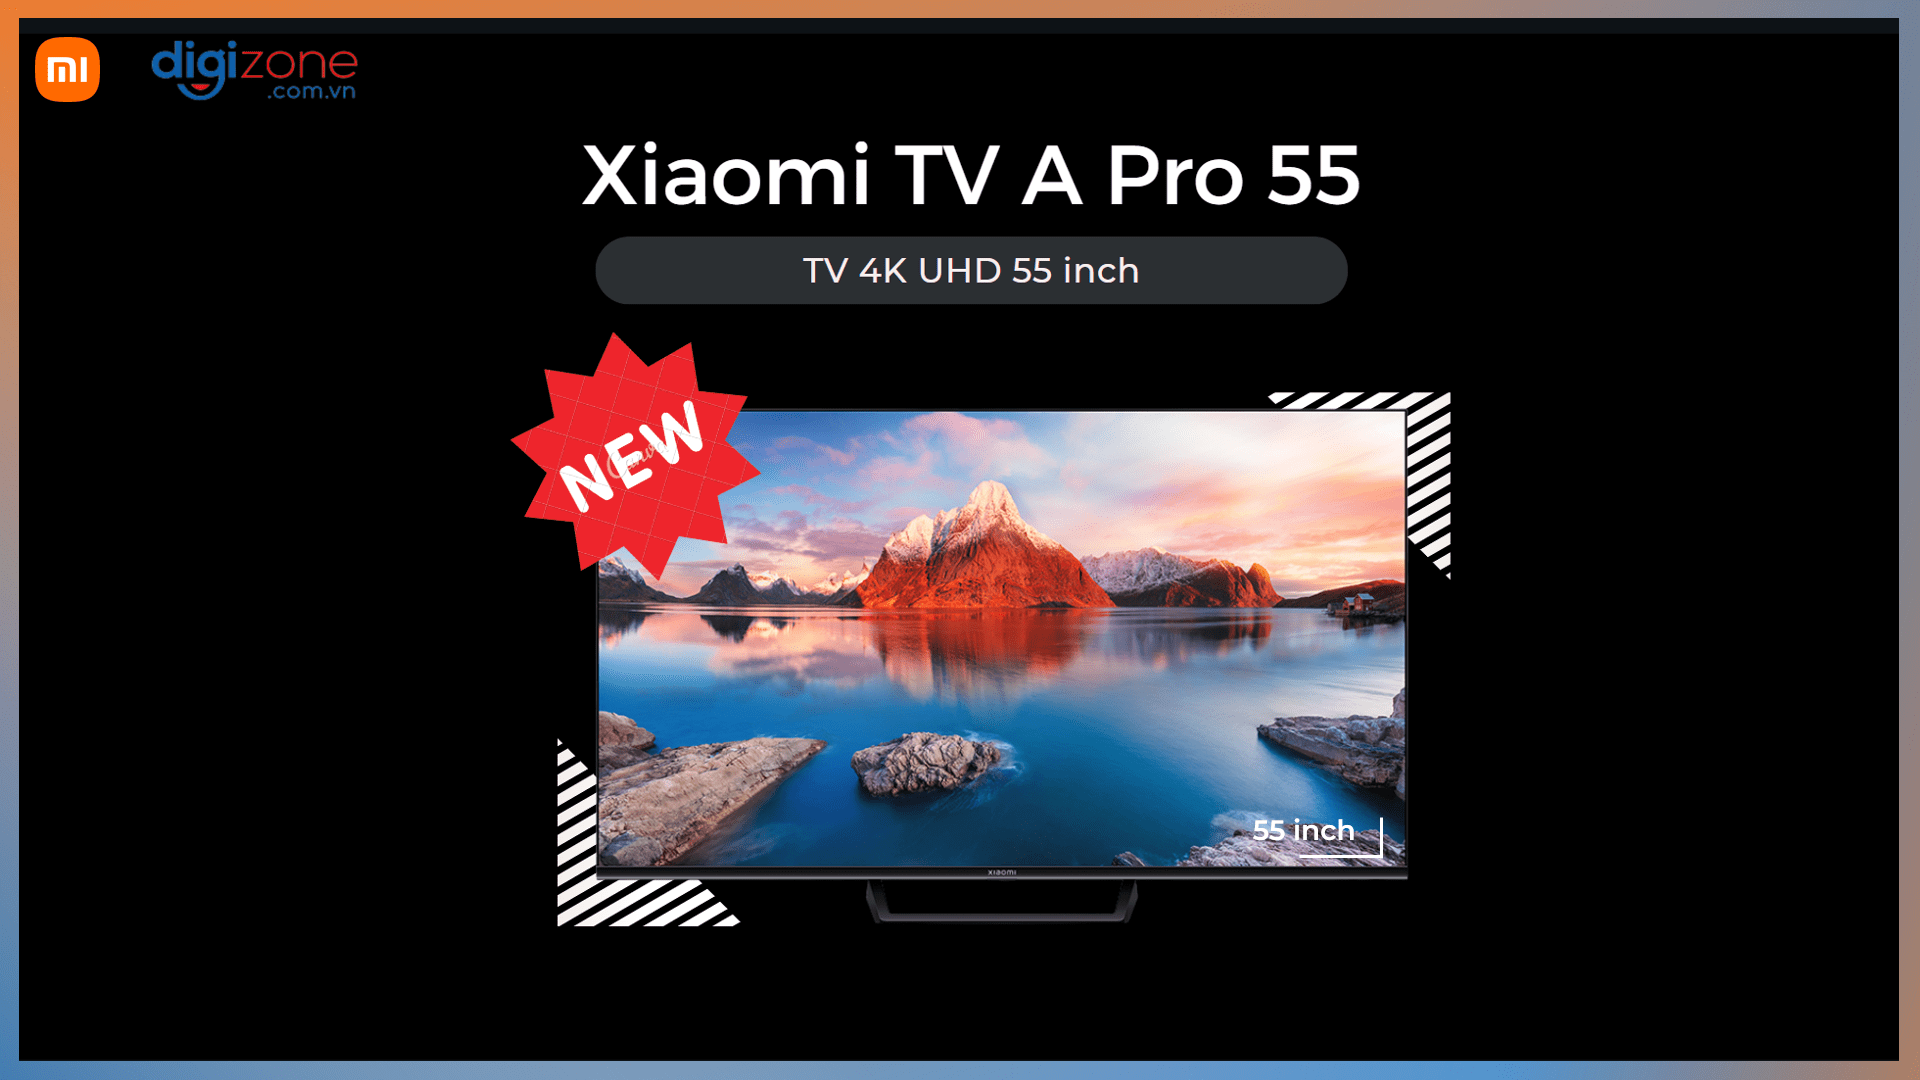 Giới thiệu về Xiaomi TV A Pro 55